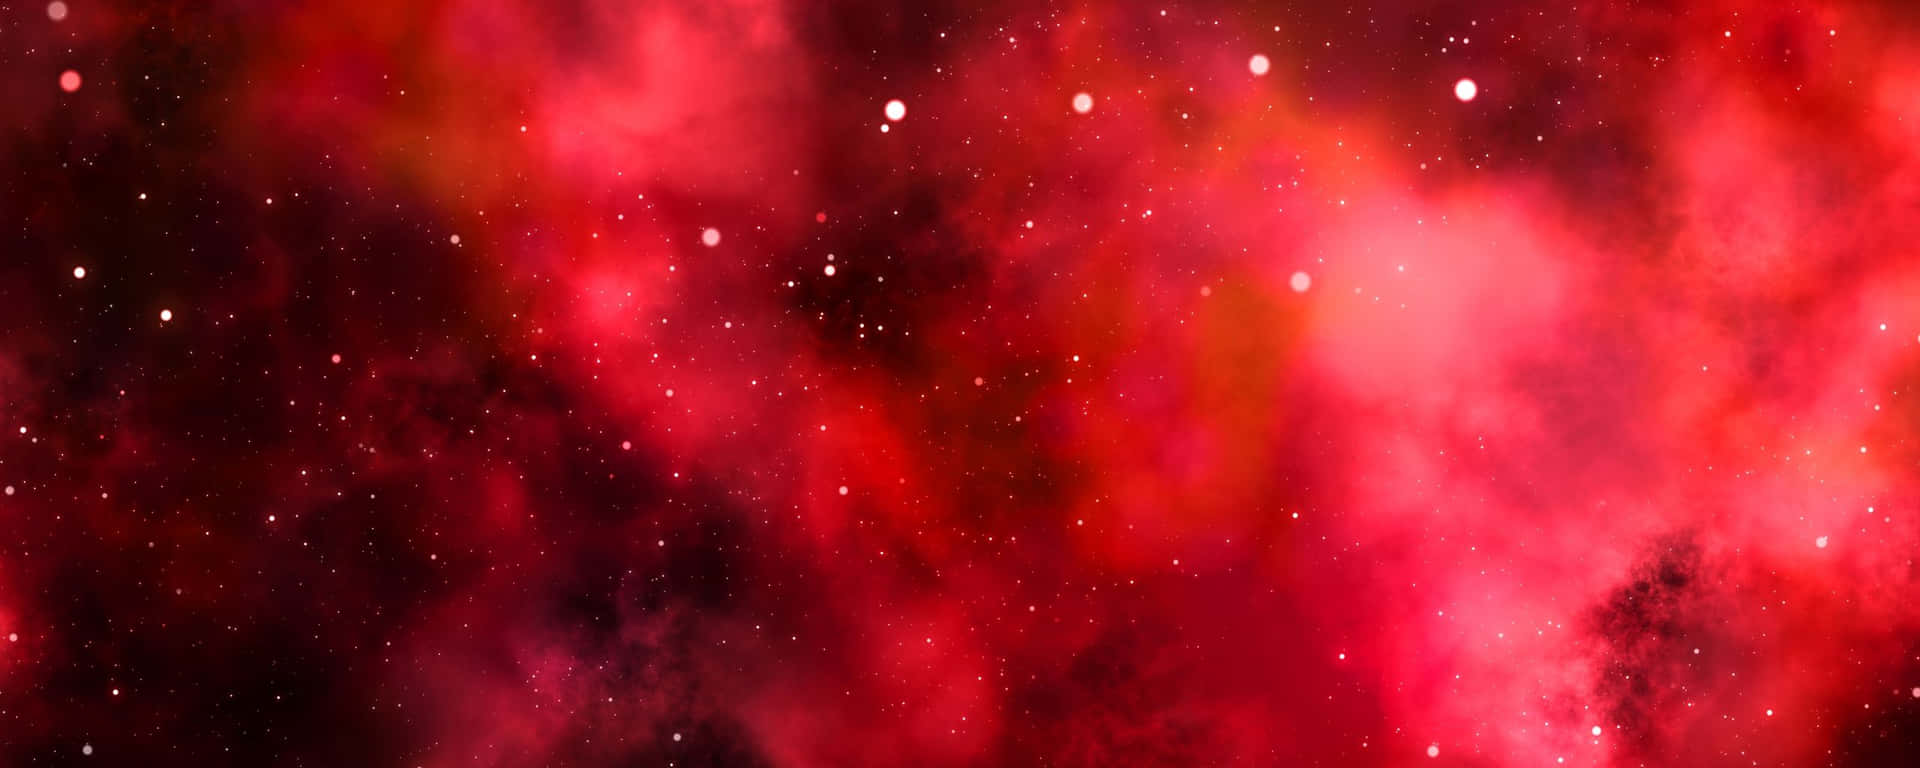 Galaxmed Moln Röd Ultra Bred Hd Wallpaper